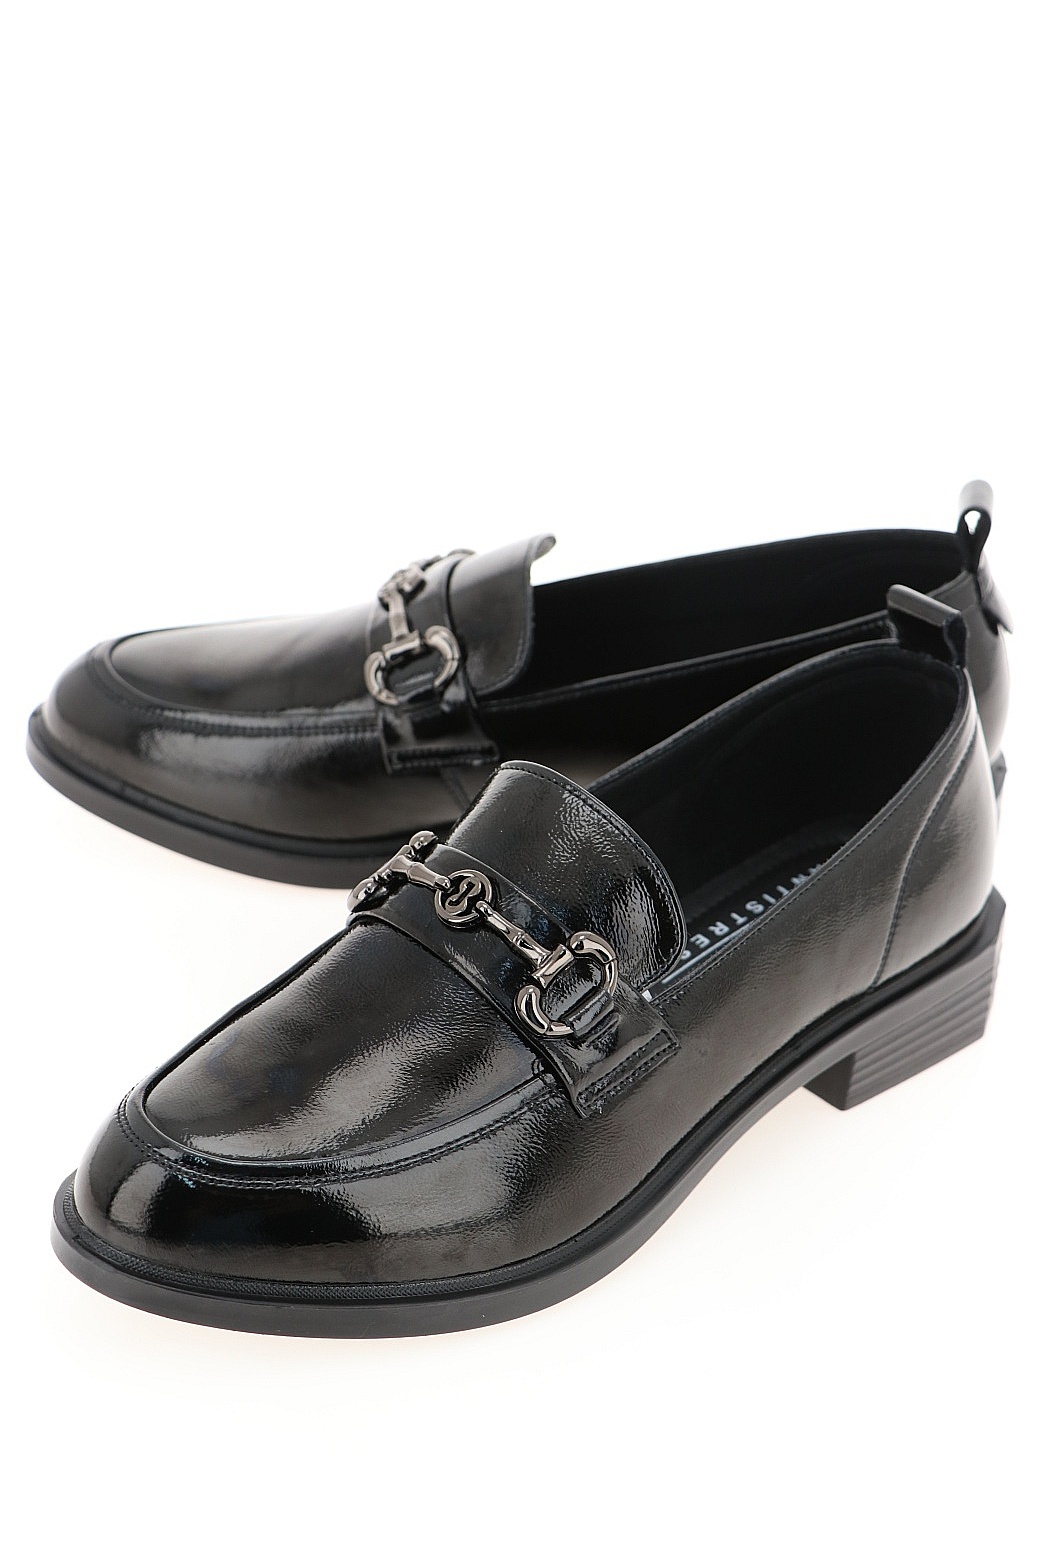 Туфли женские Baden CV045-122 черные 36 RU